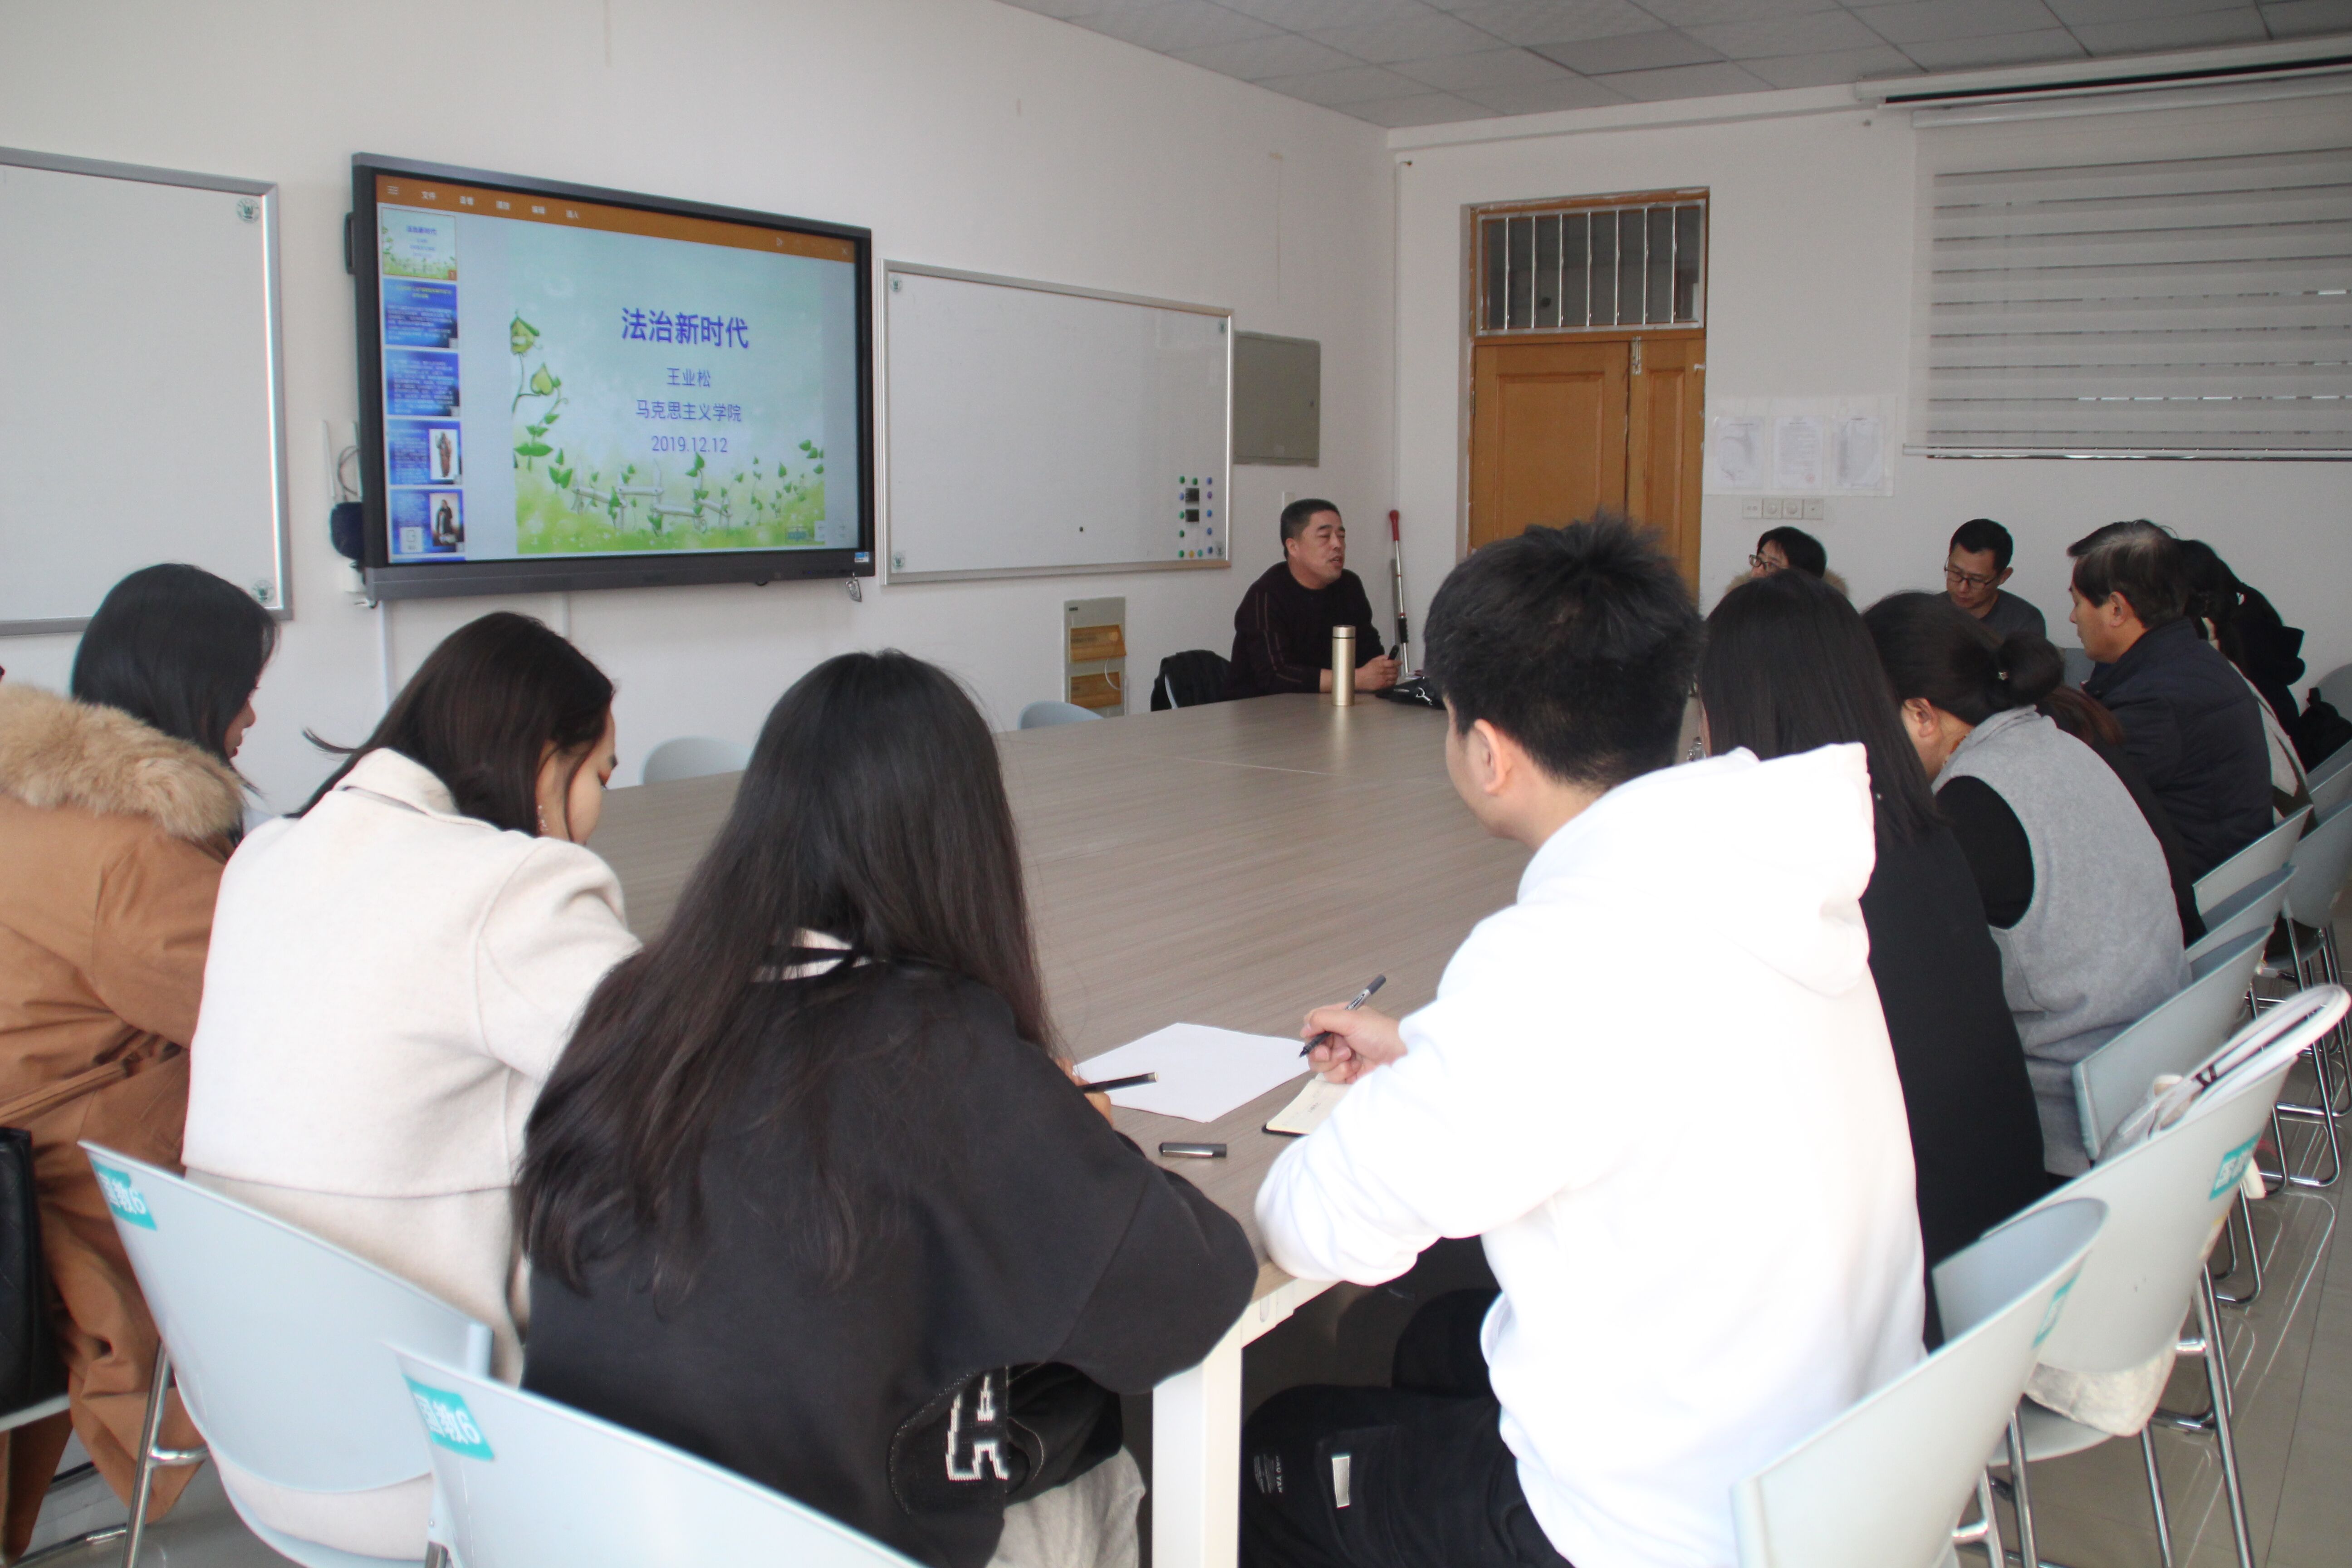 老挝举办留学中国职业教育与高等教育展览会